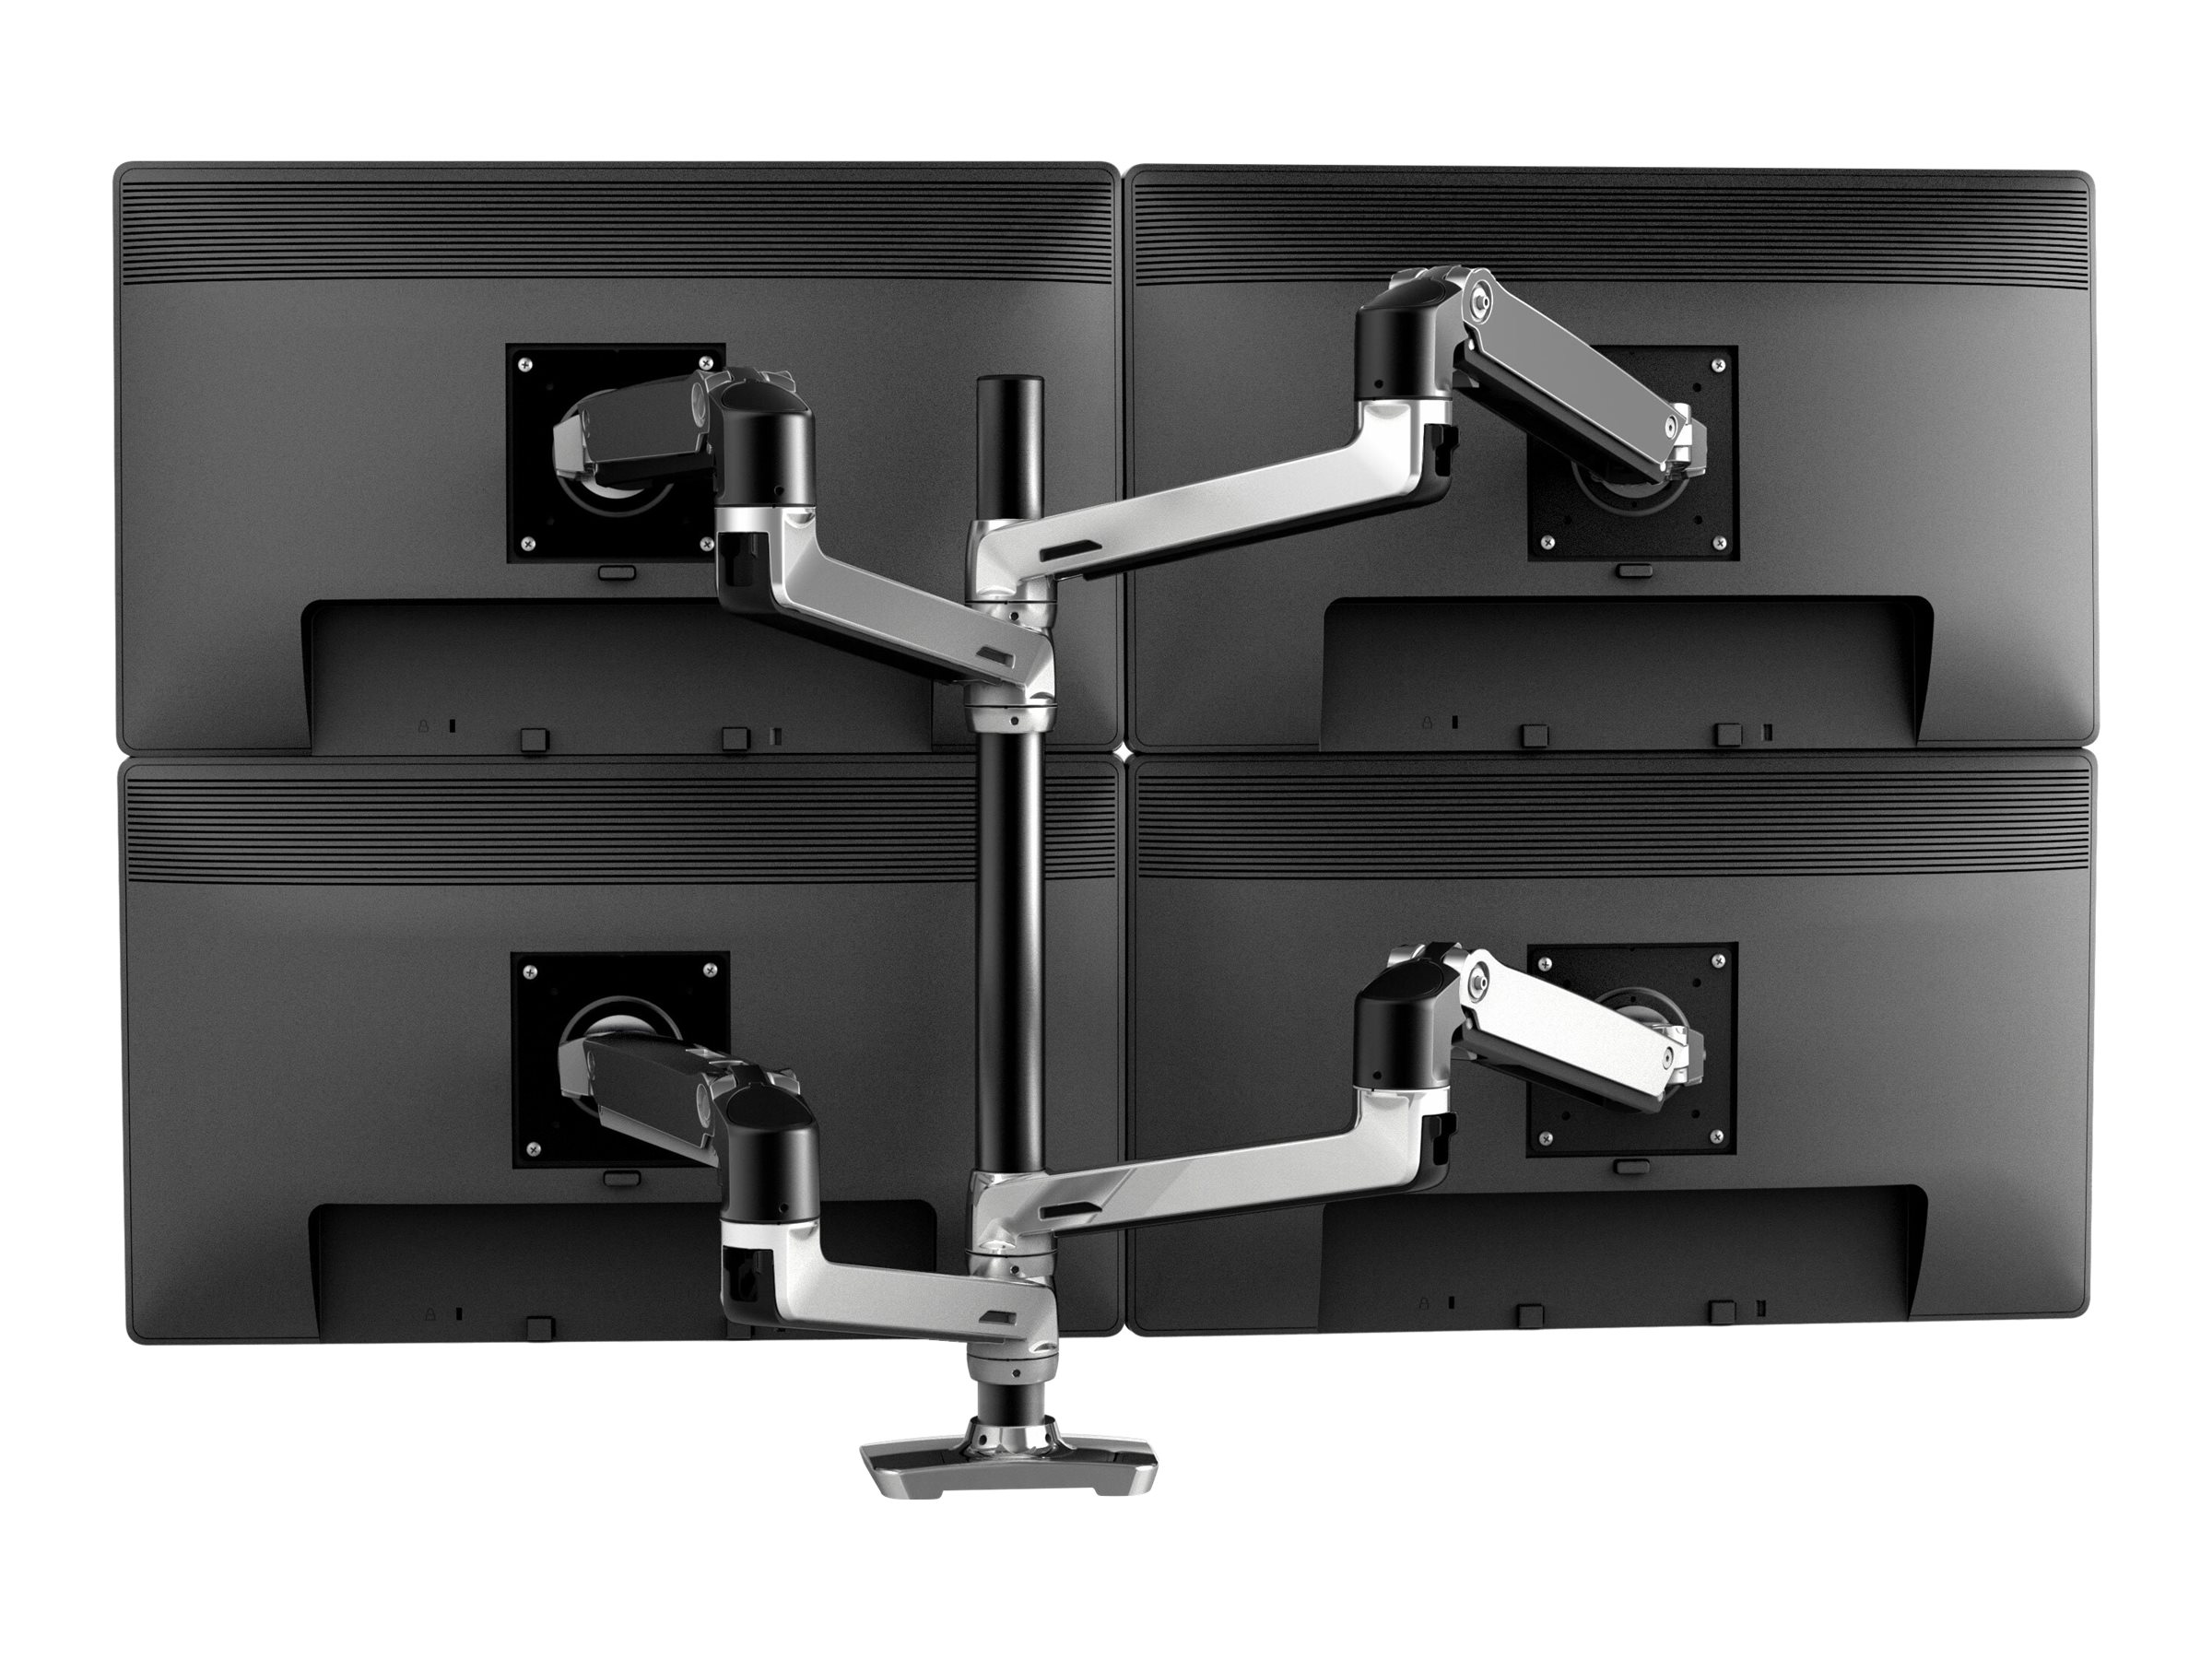 Ergotron LX - Kit de montage (poteau haut, bras d'empilage double) - pour 2 écrans LCD - aluminium, acier - aluminium poli avec des accents noirs - Taille d'écran : jusqu'à 40 pouces - 45-549-026 - Accessoires pour écran